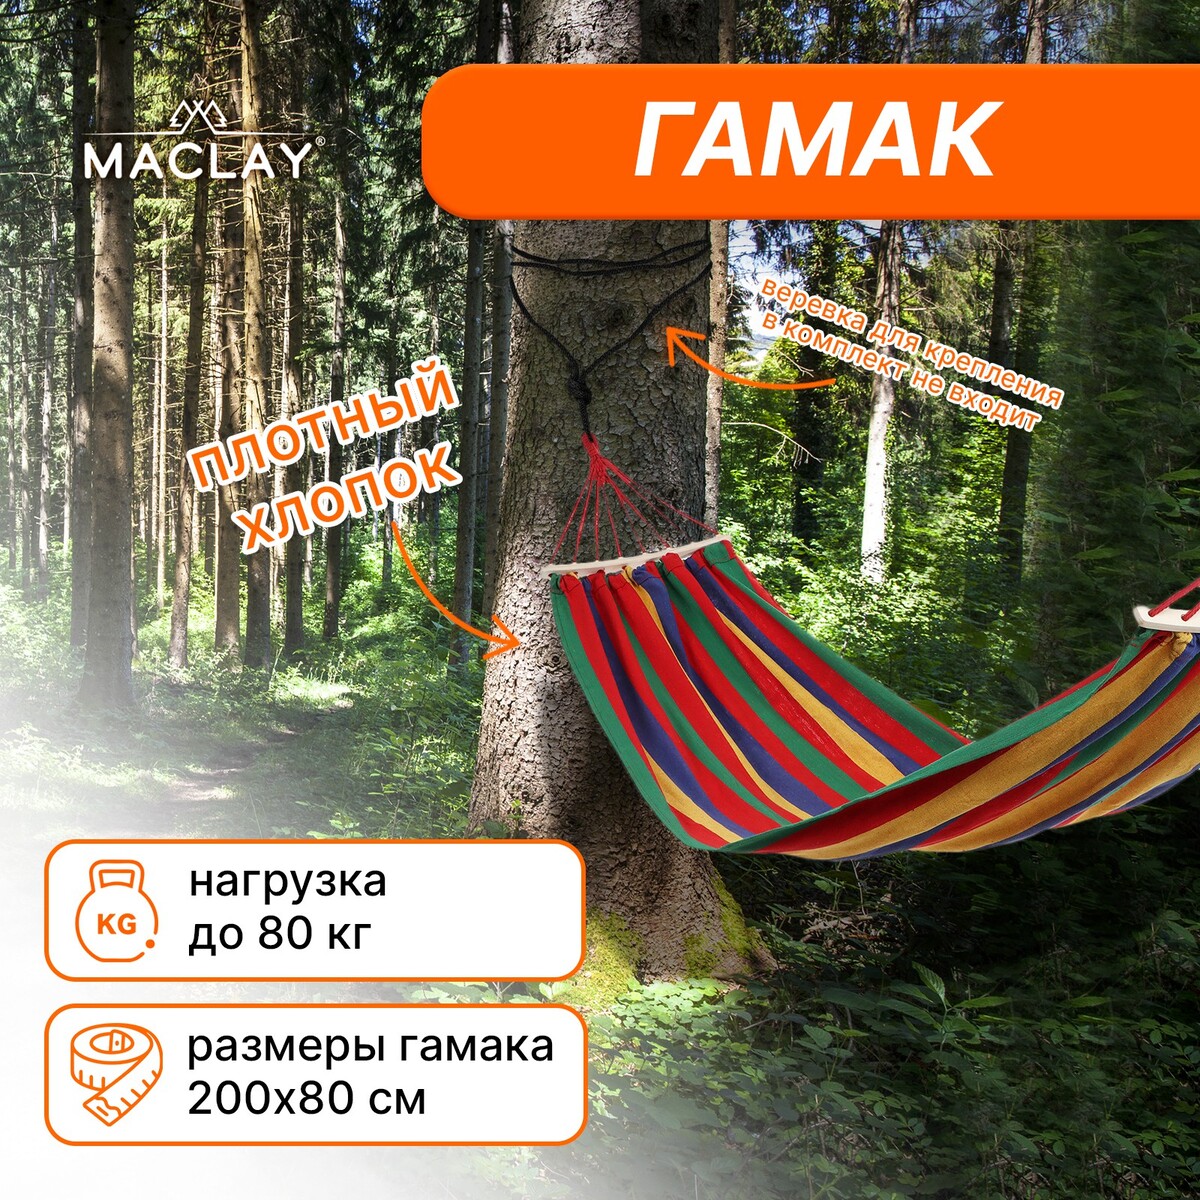 Гамак maclay, 200х80 см, дерево, многоцветный гамак подставка для отдыха ног в путешествии